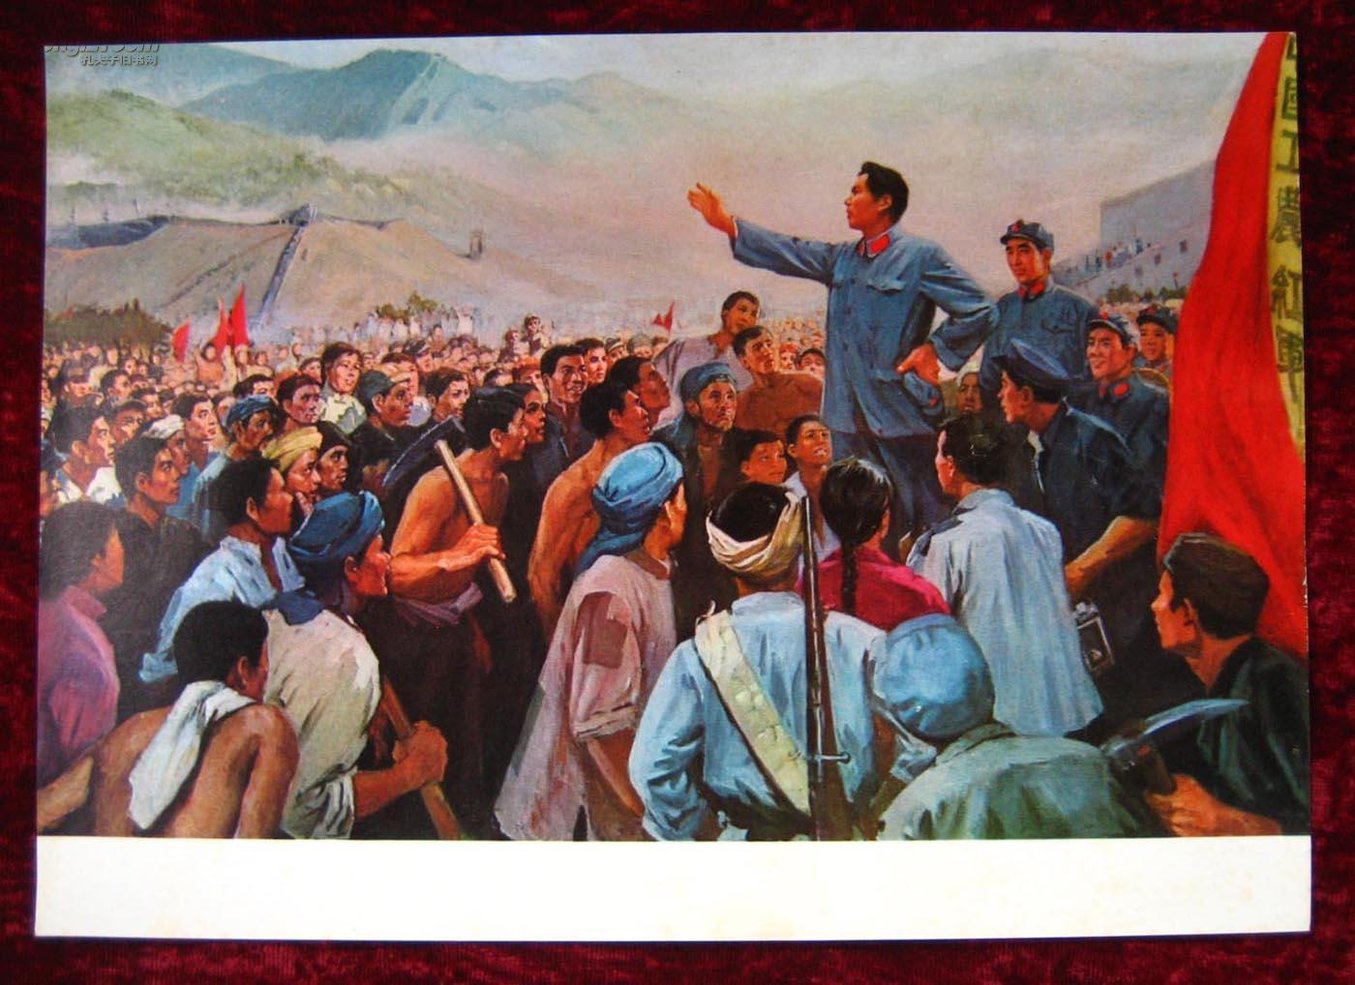 中国工农红军是中国土地革命战争时期,中国共产党领导的人民军队.